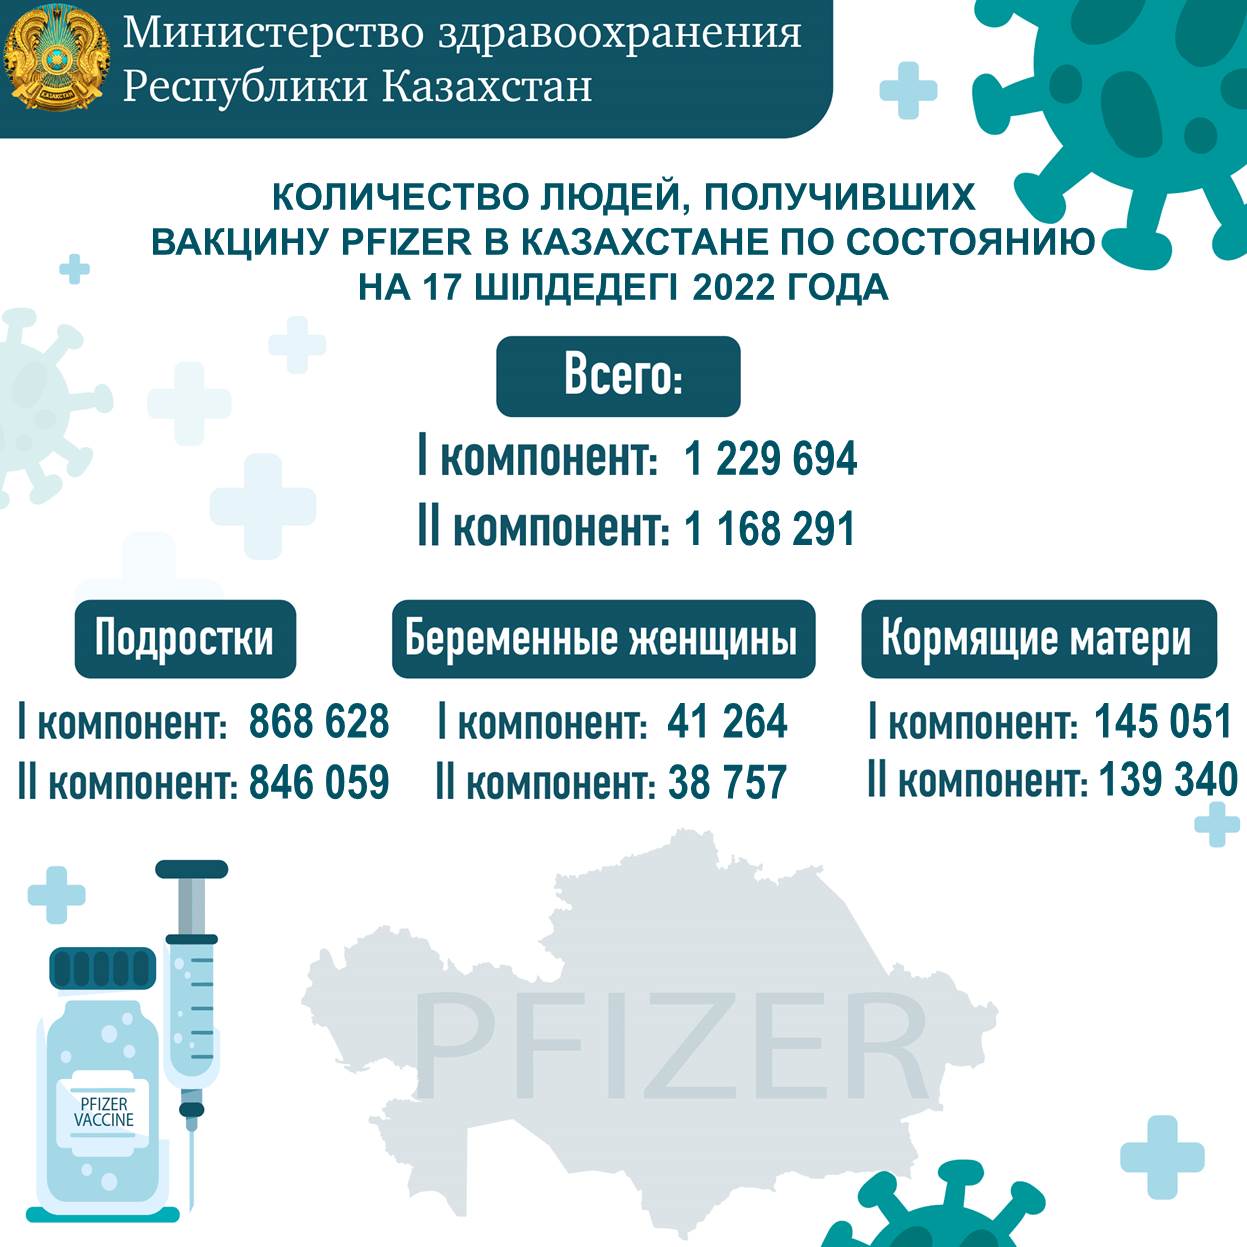 Количество людей, получивших вакцину Рfizer в Казахстане по состоянию на 17.07.2022 года